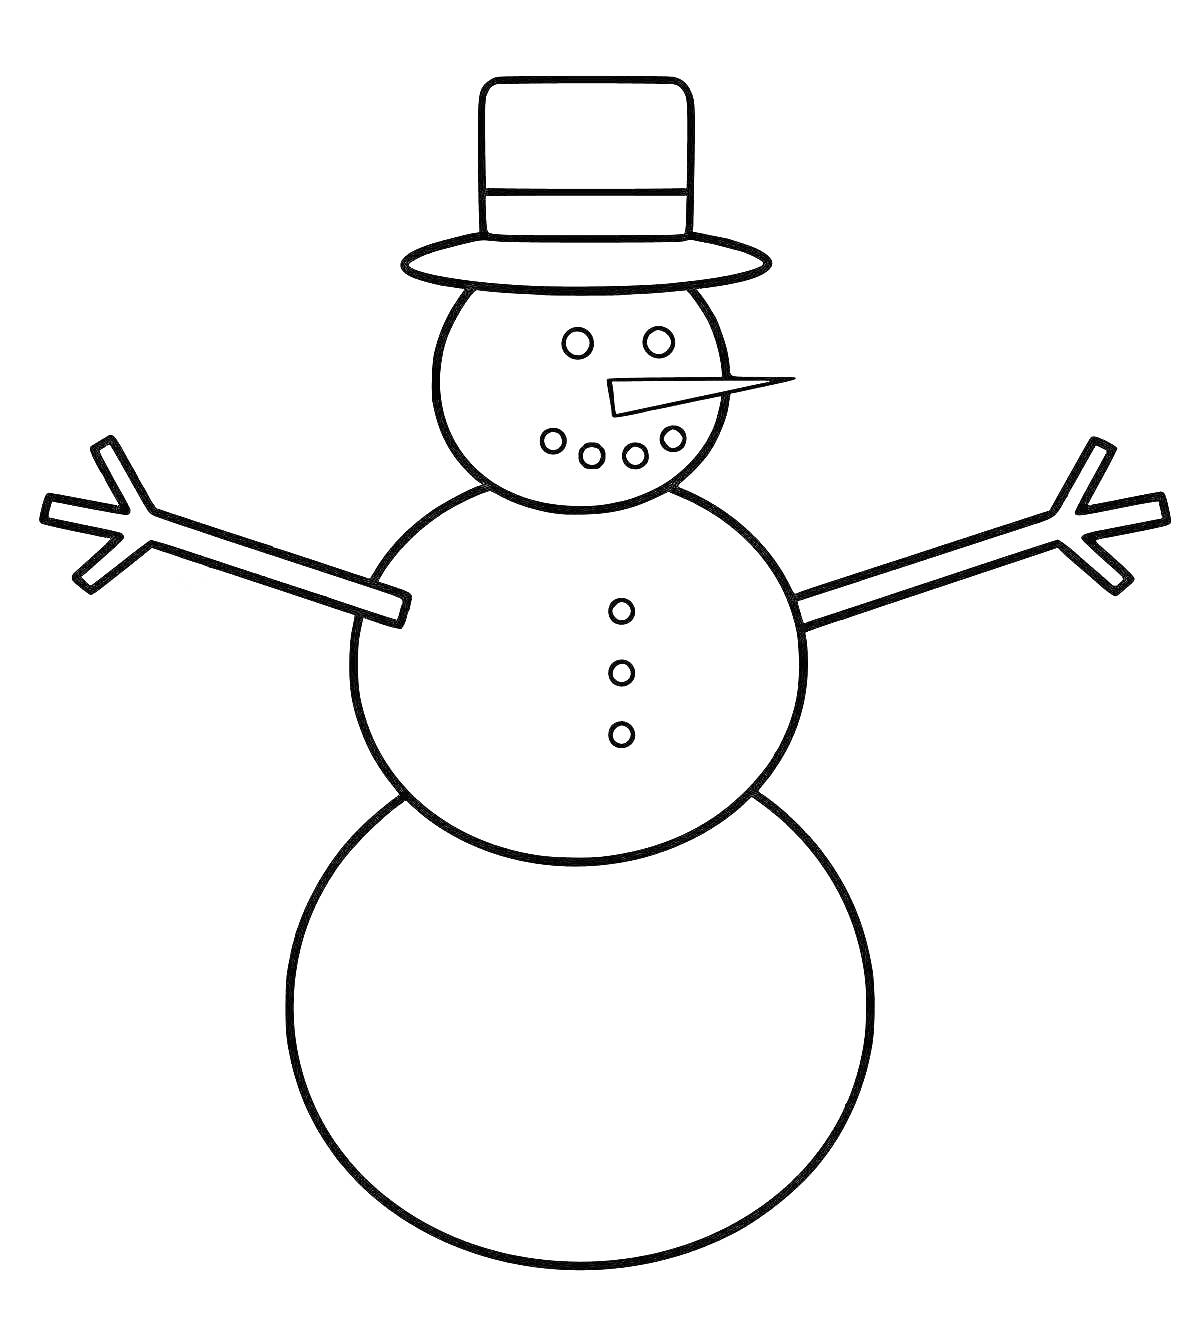 Снеговик с шляпой, морковным носом, пуговицами и ветками в качестве рук